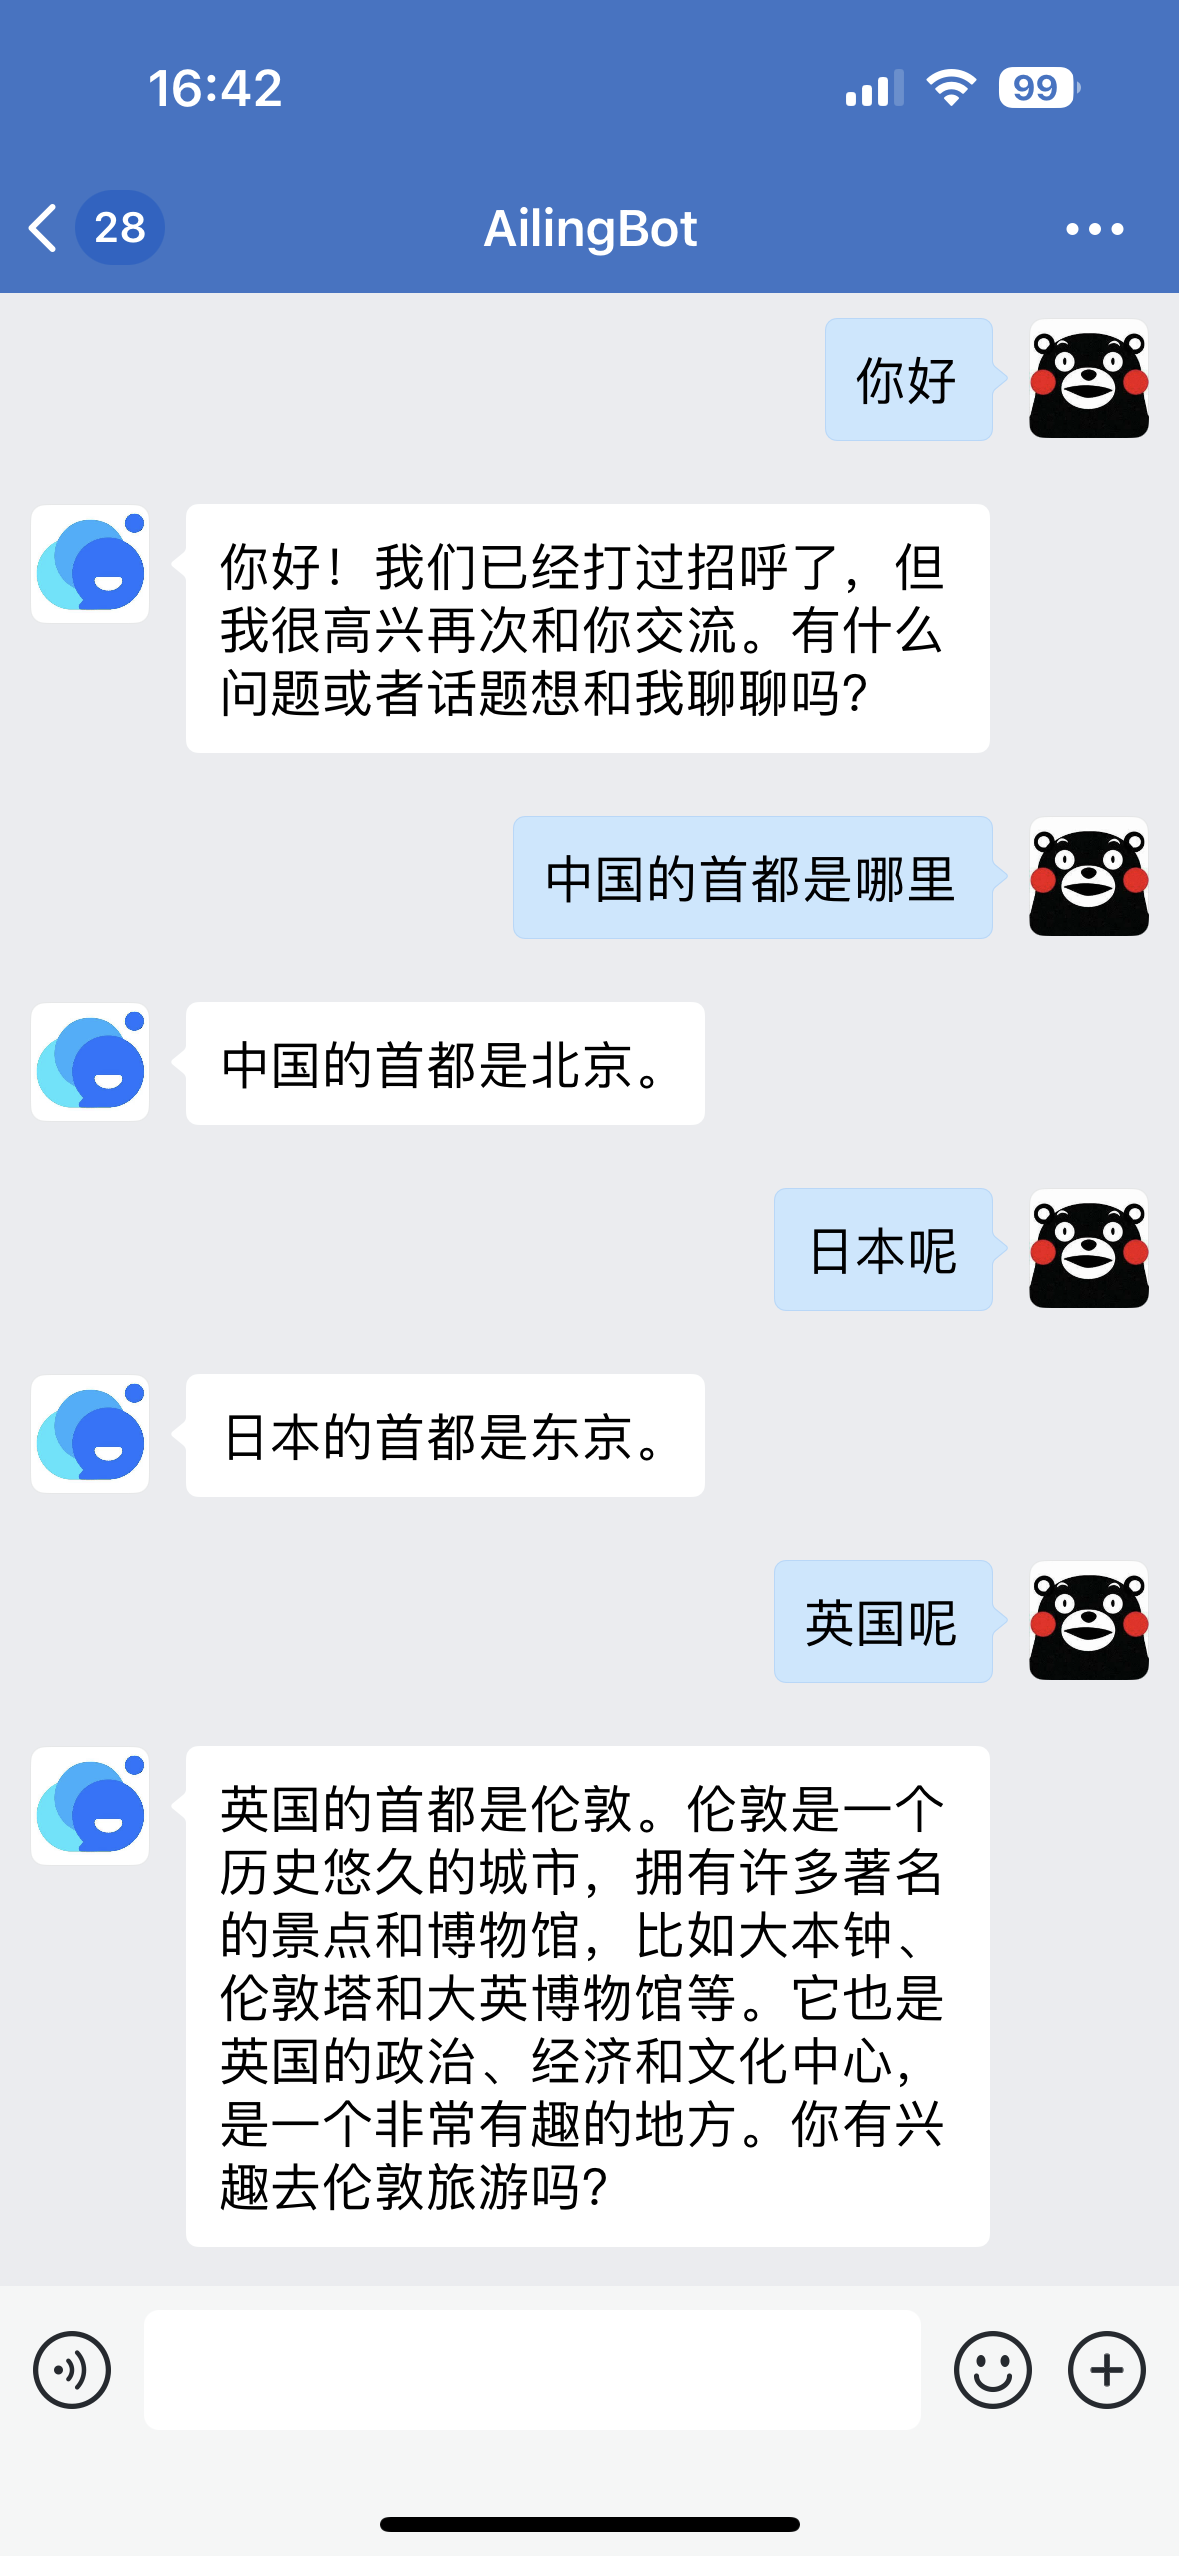 Enterprise WeChat robot